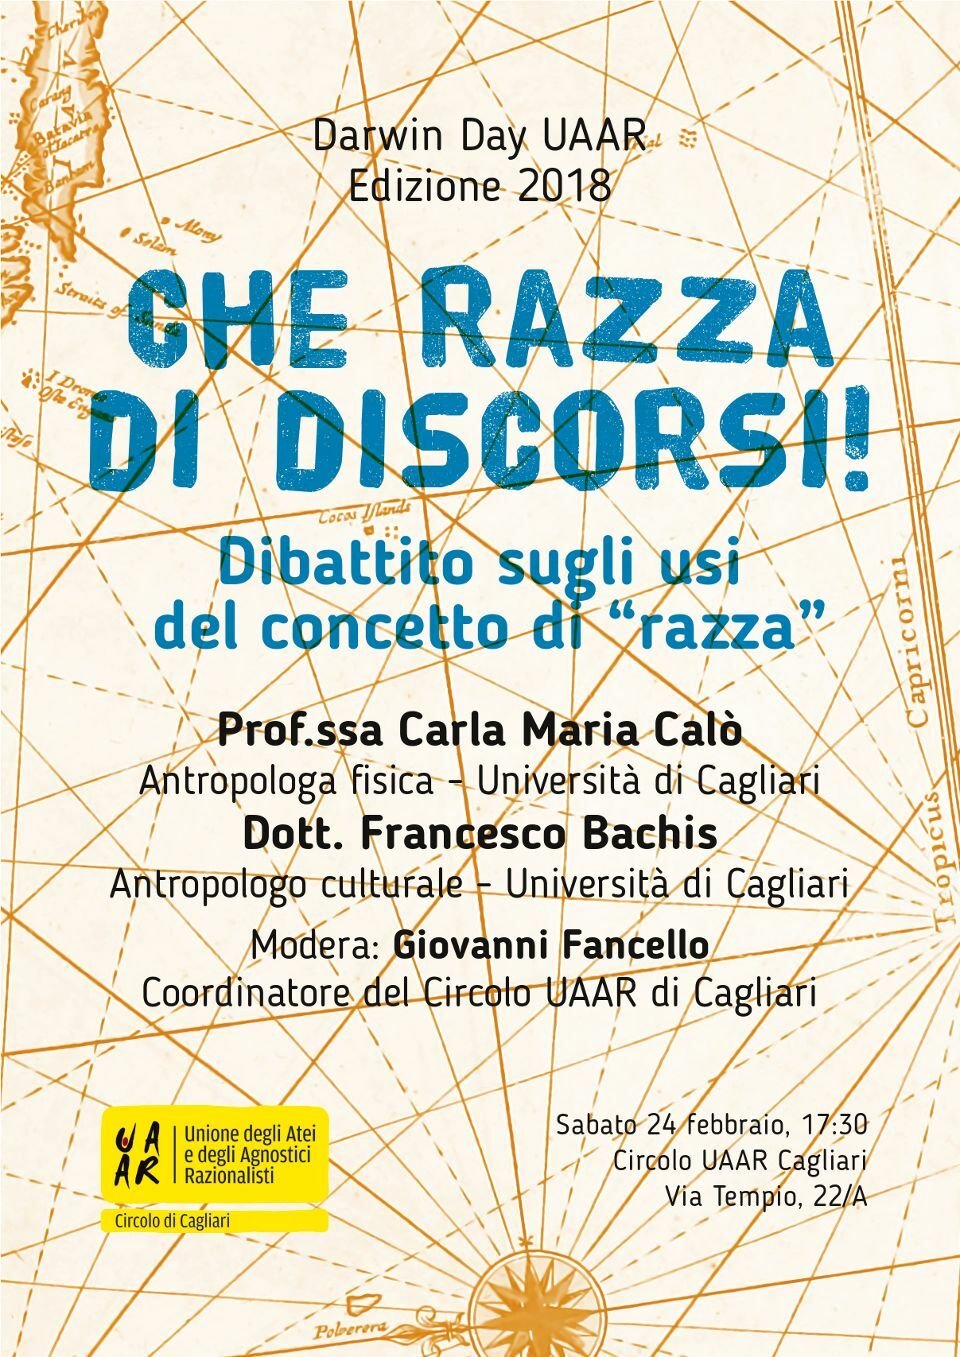 L'evento del Darwin Day a Cagliari